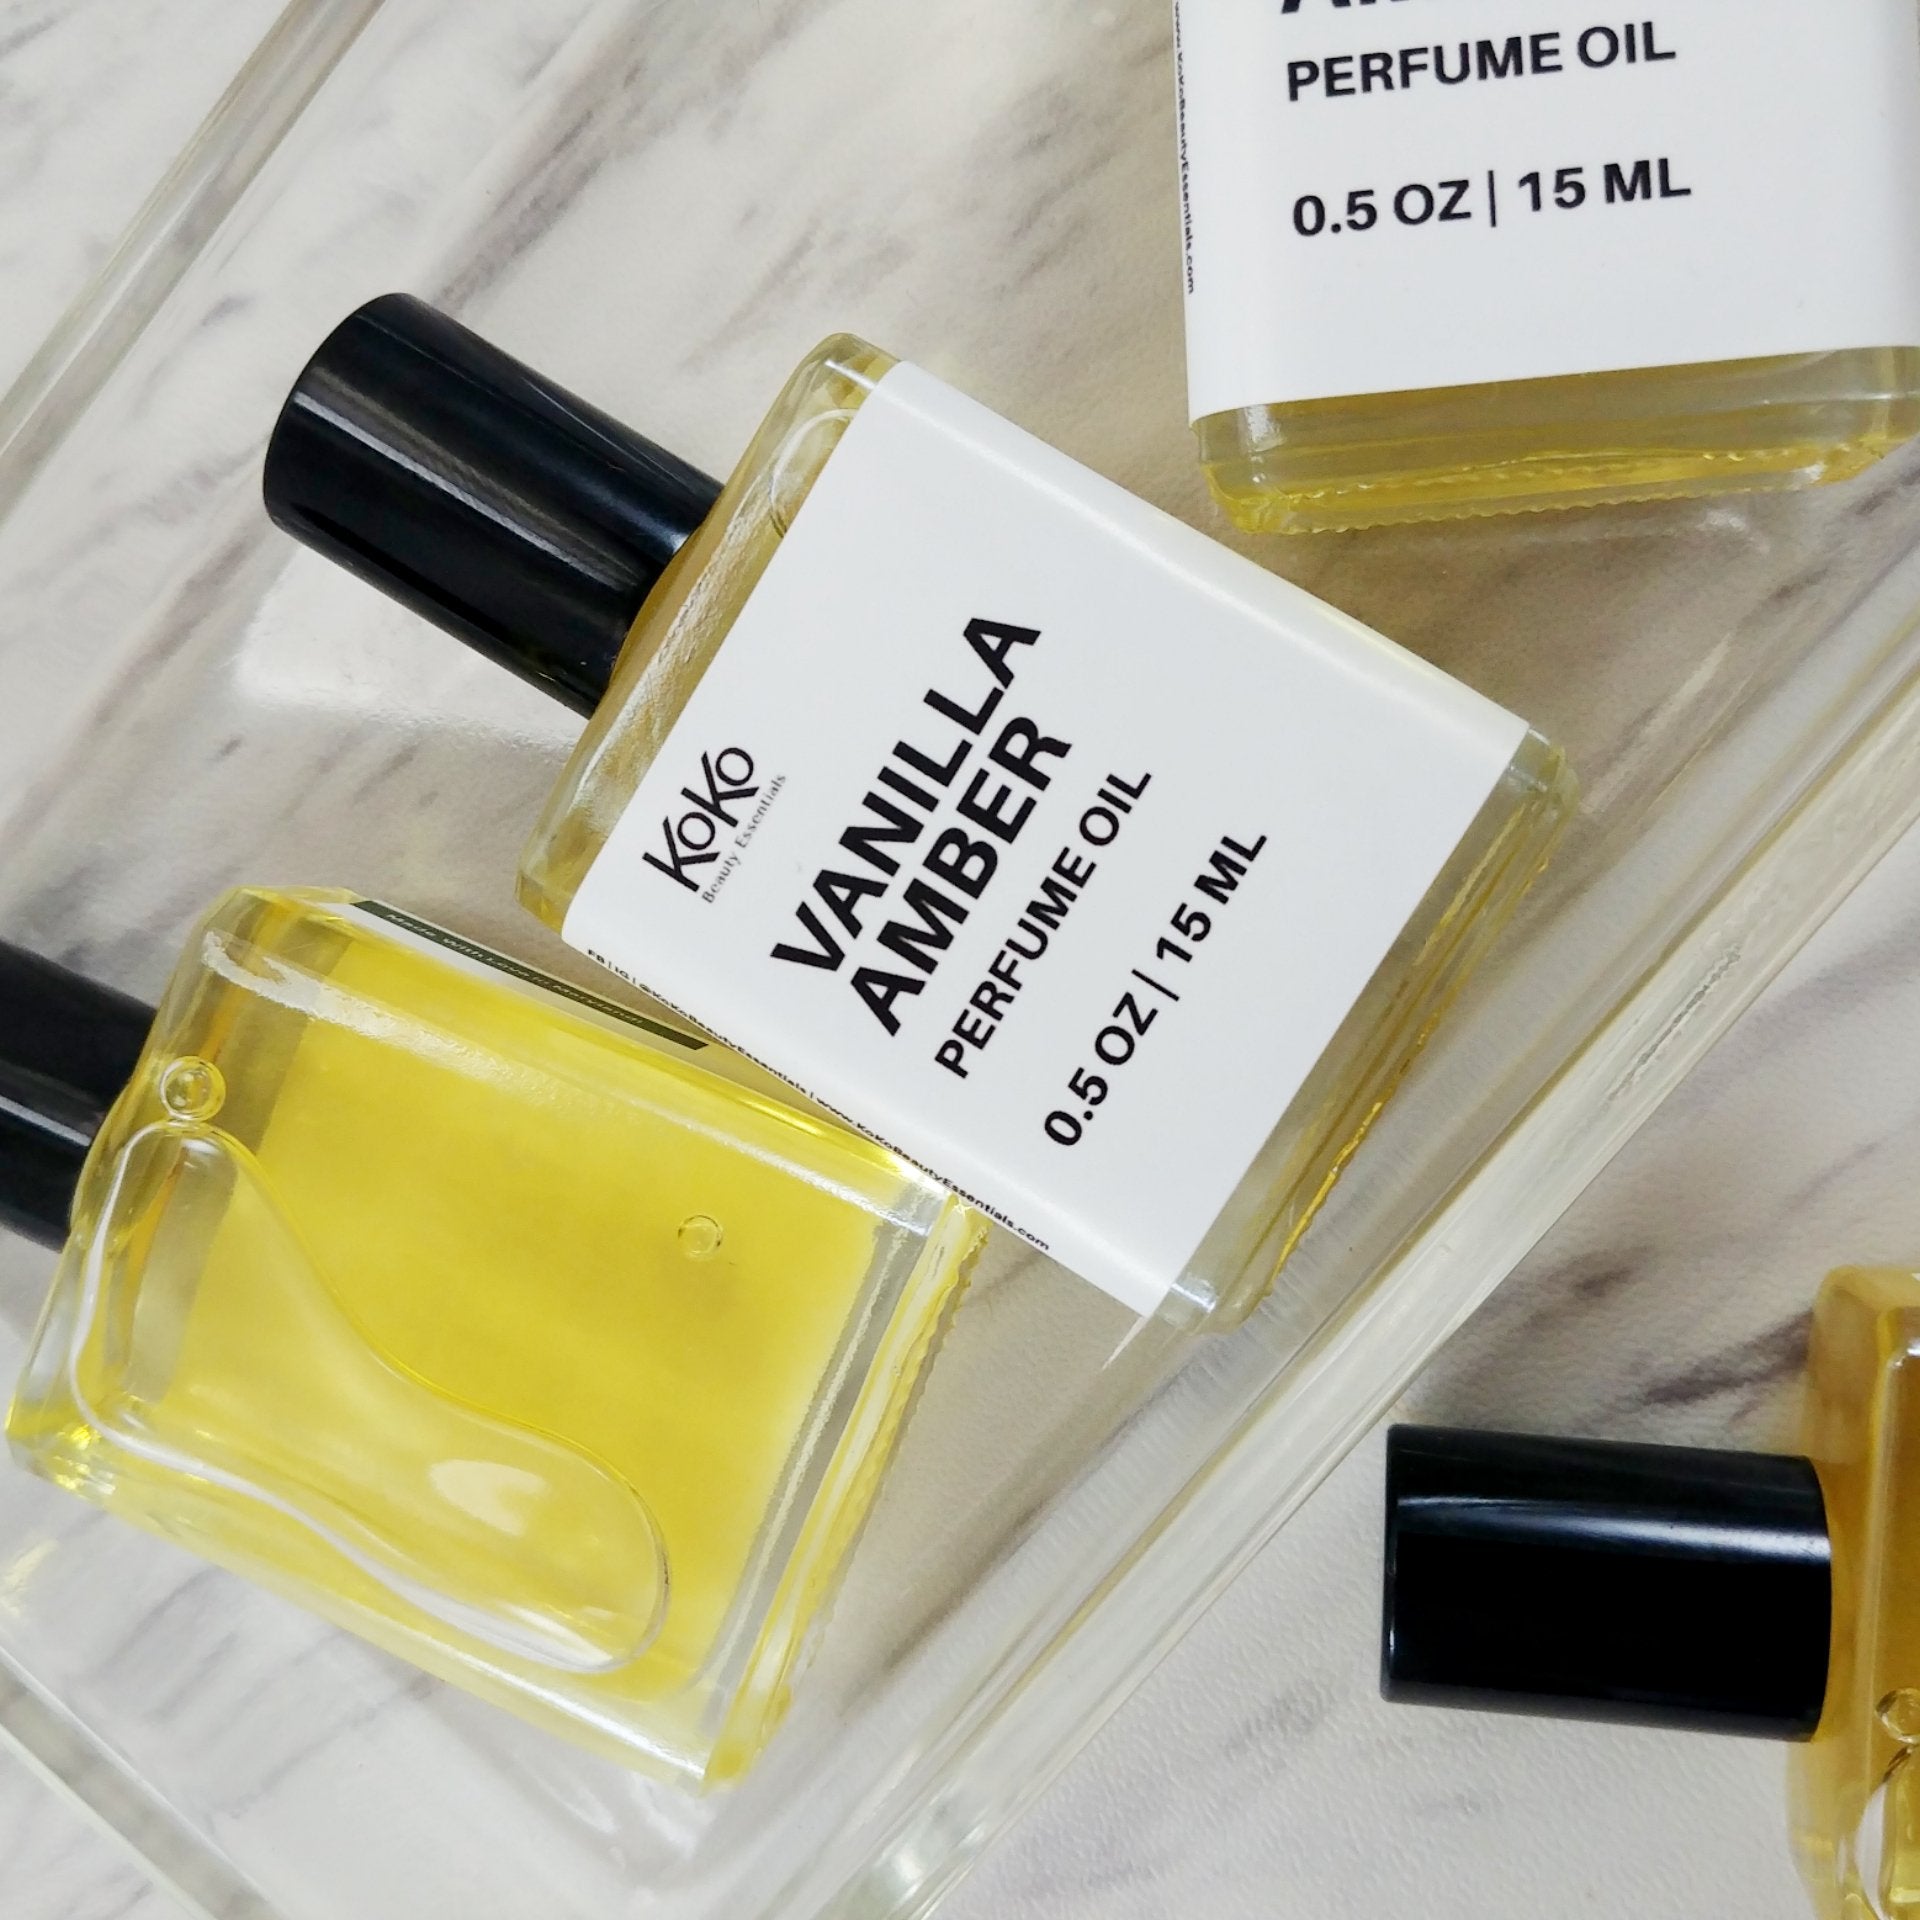 Vanilla Amber Perfume Oil - KoKoBeautyEssentials